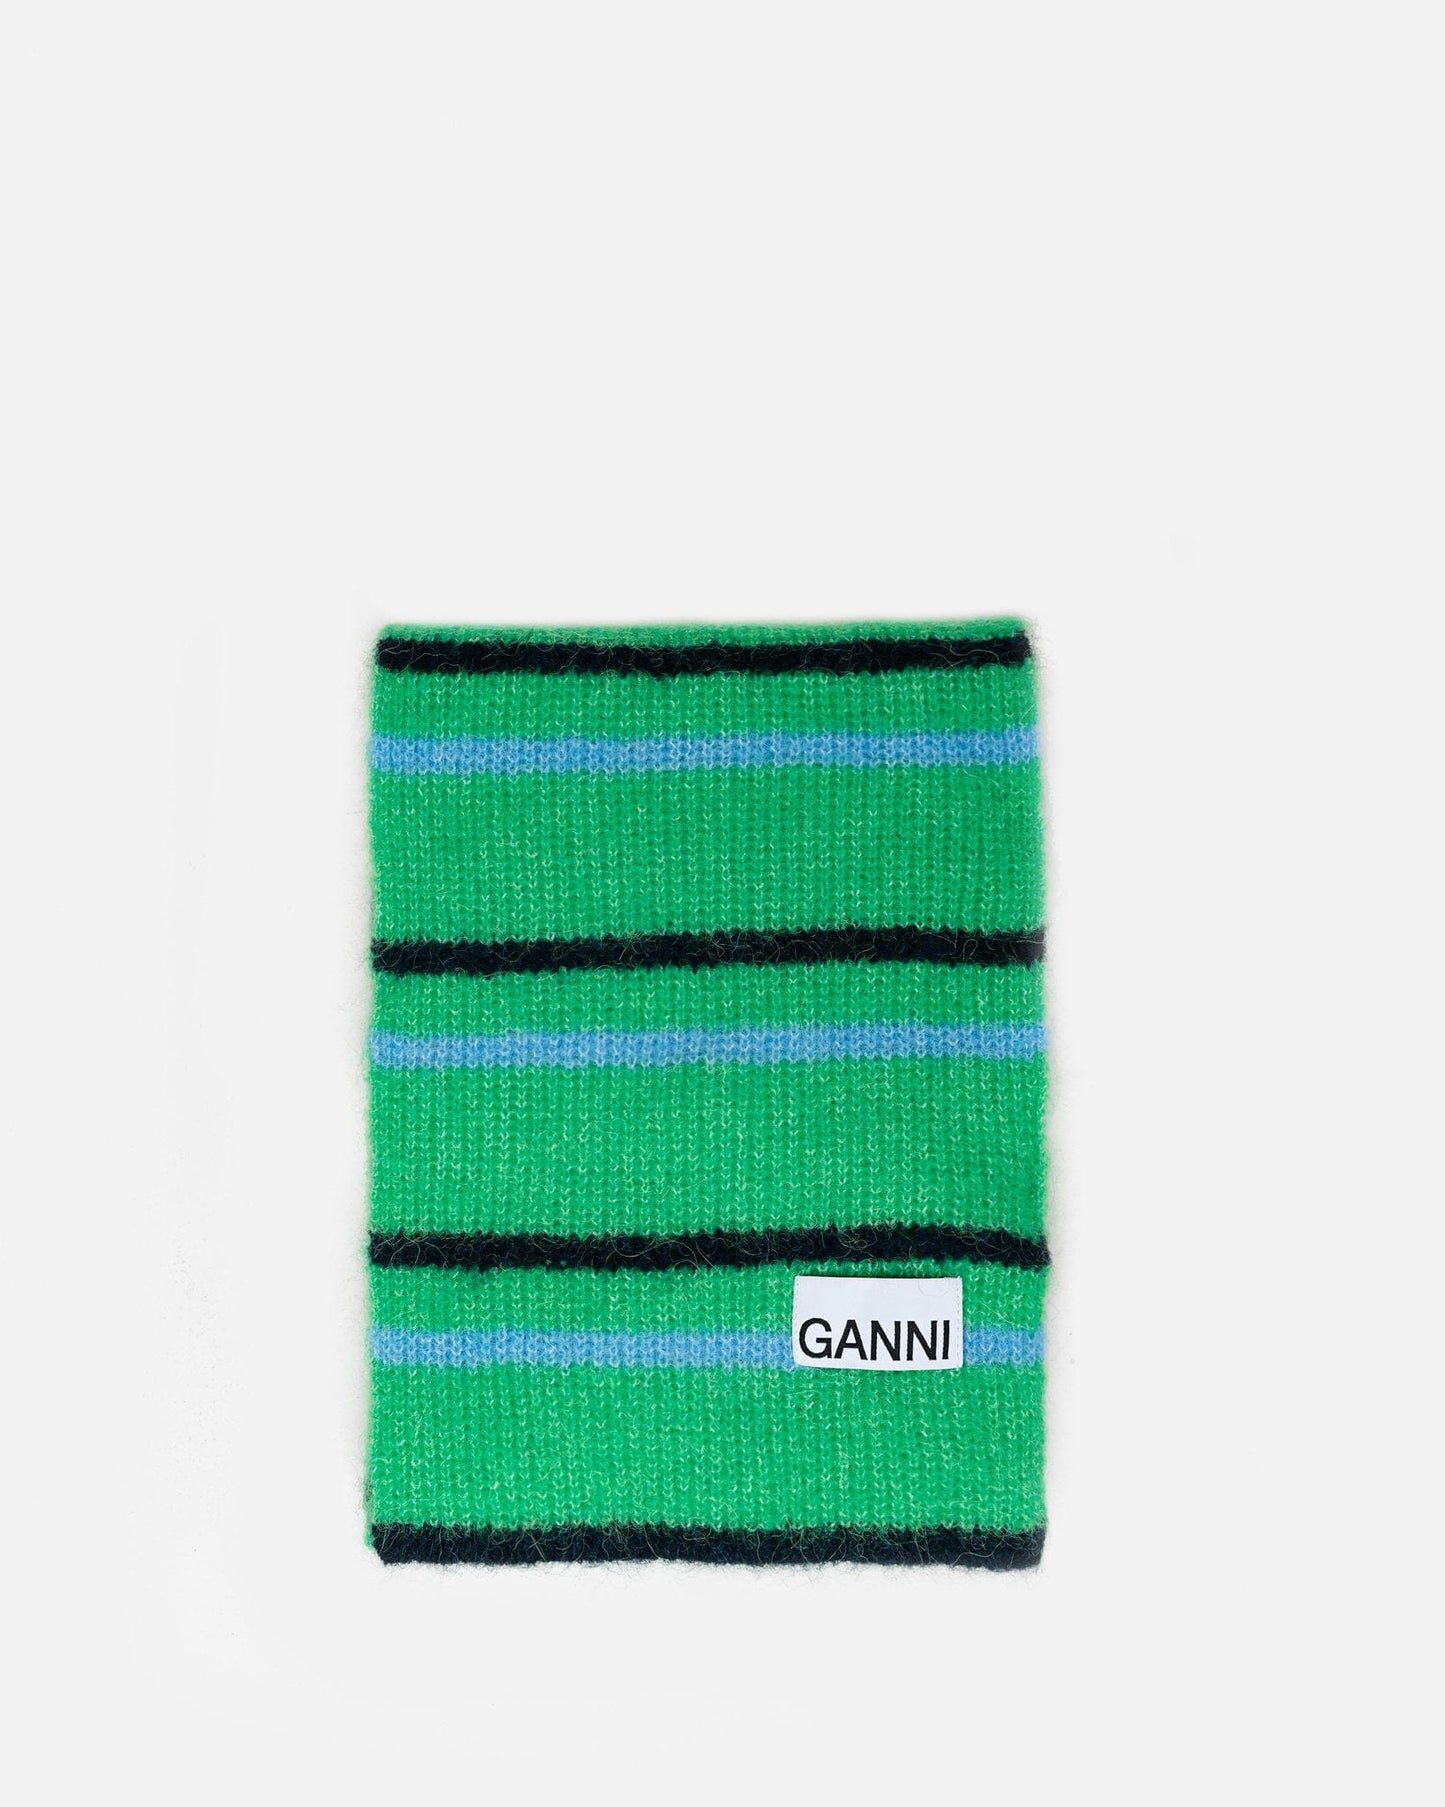 Ganni Scarves Soft Wool Scarf in Kelly Green